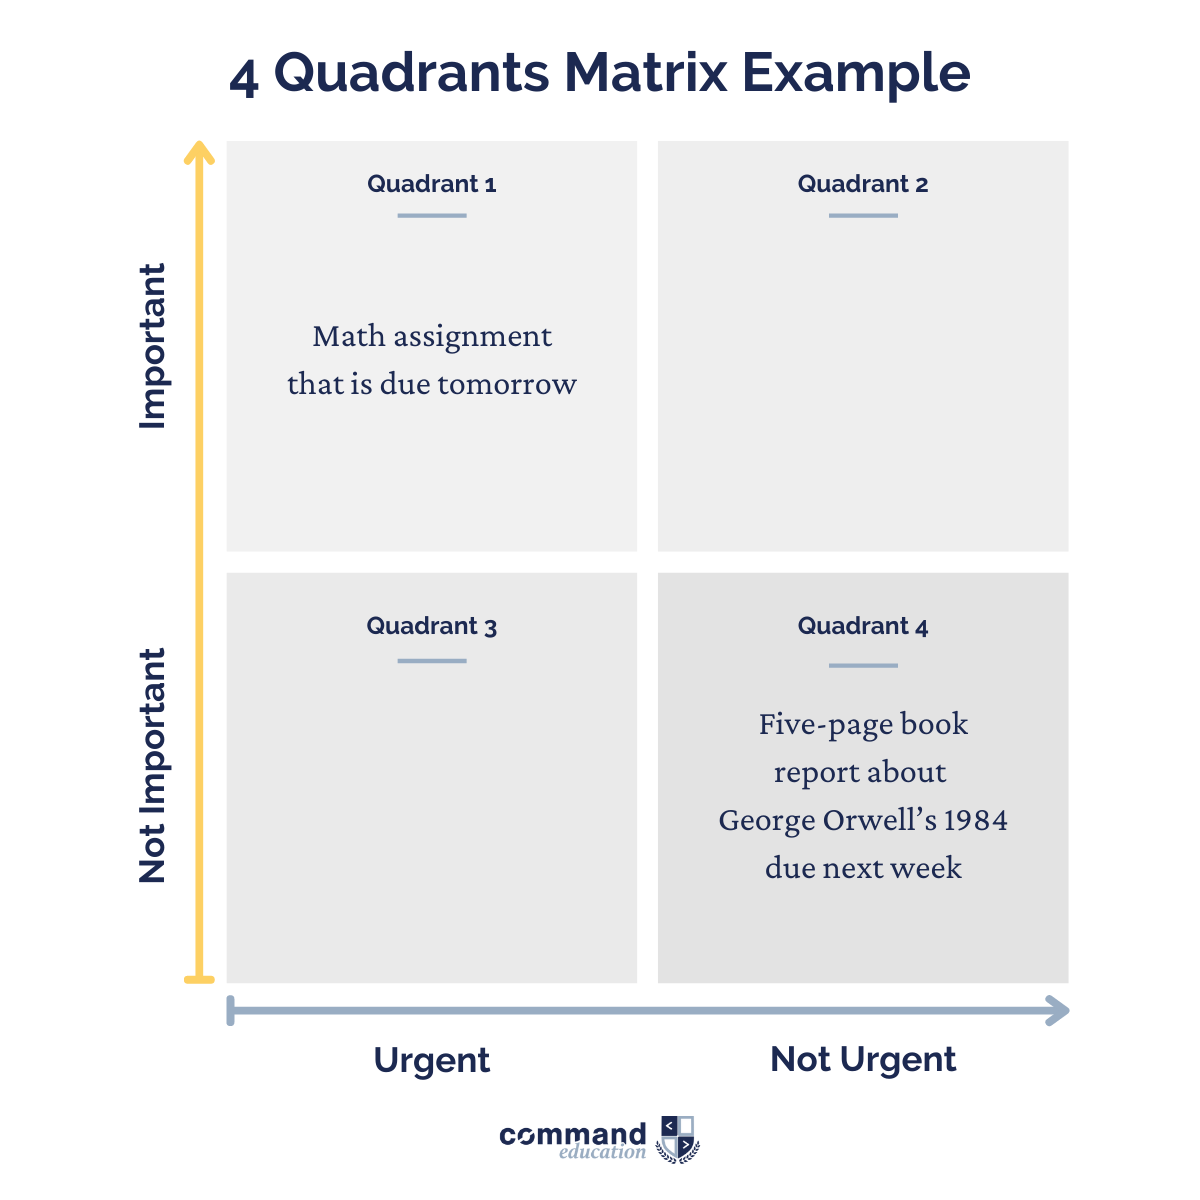 4 Quadrants Matrix Example